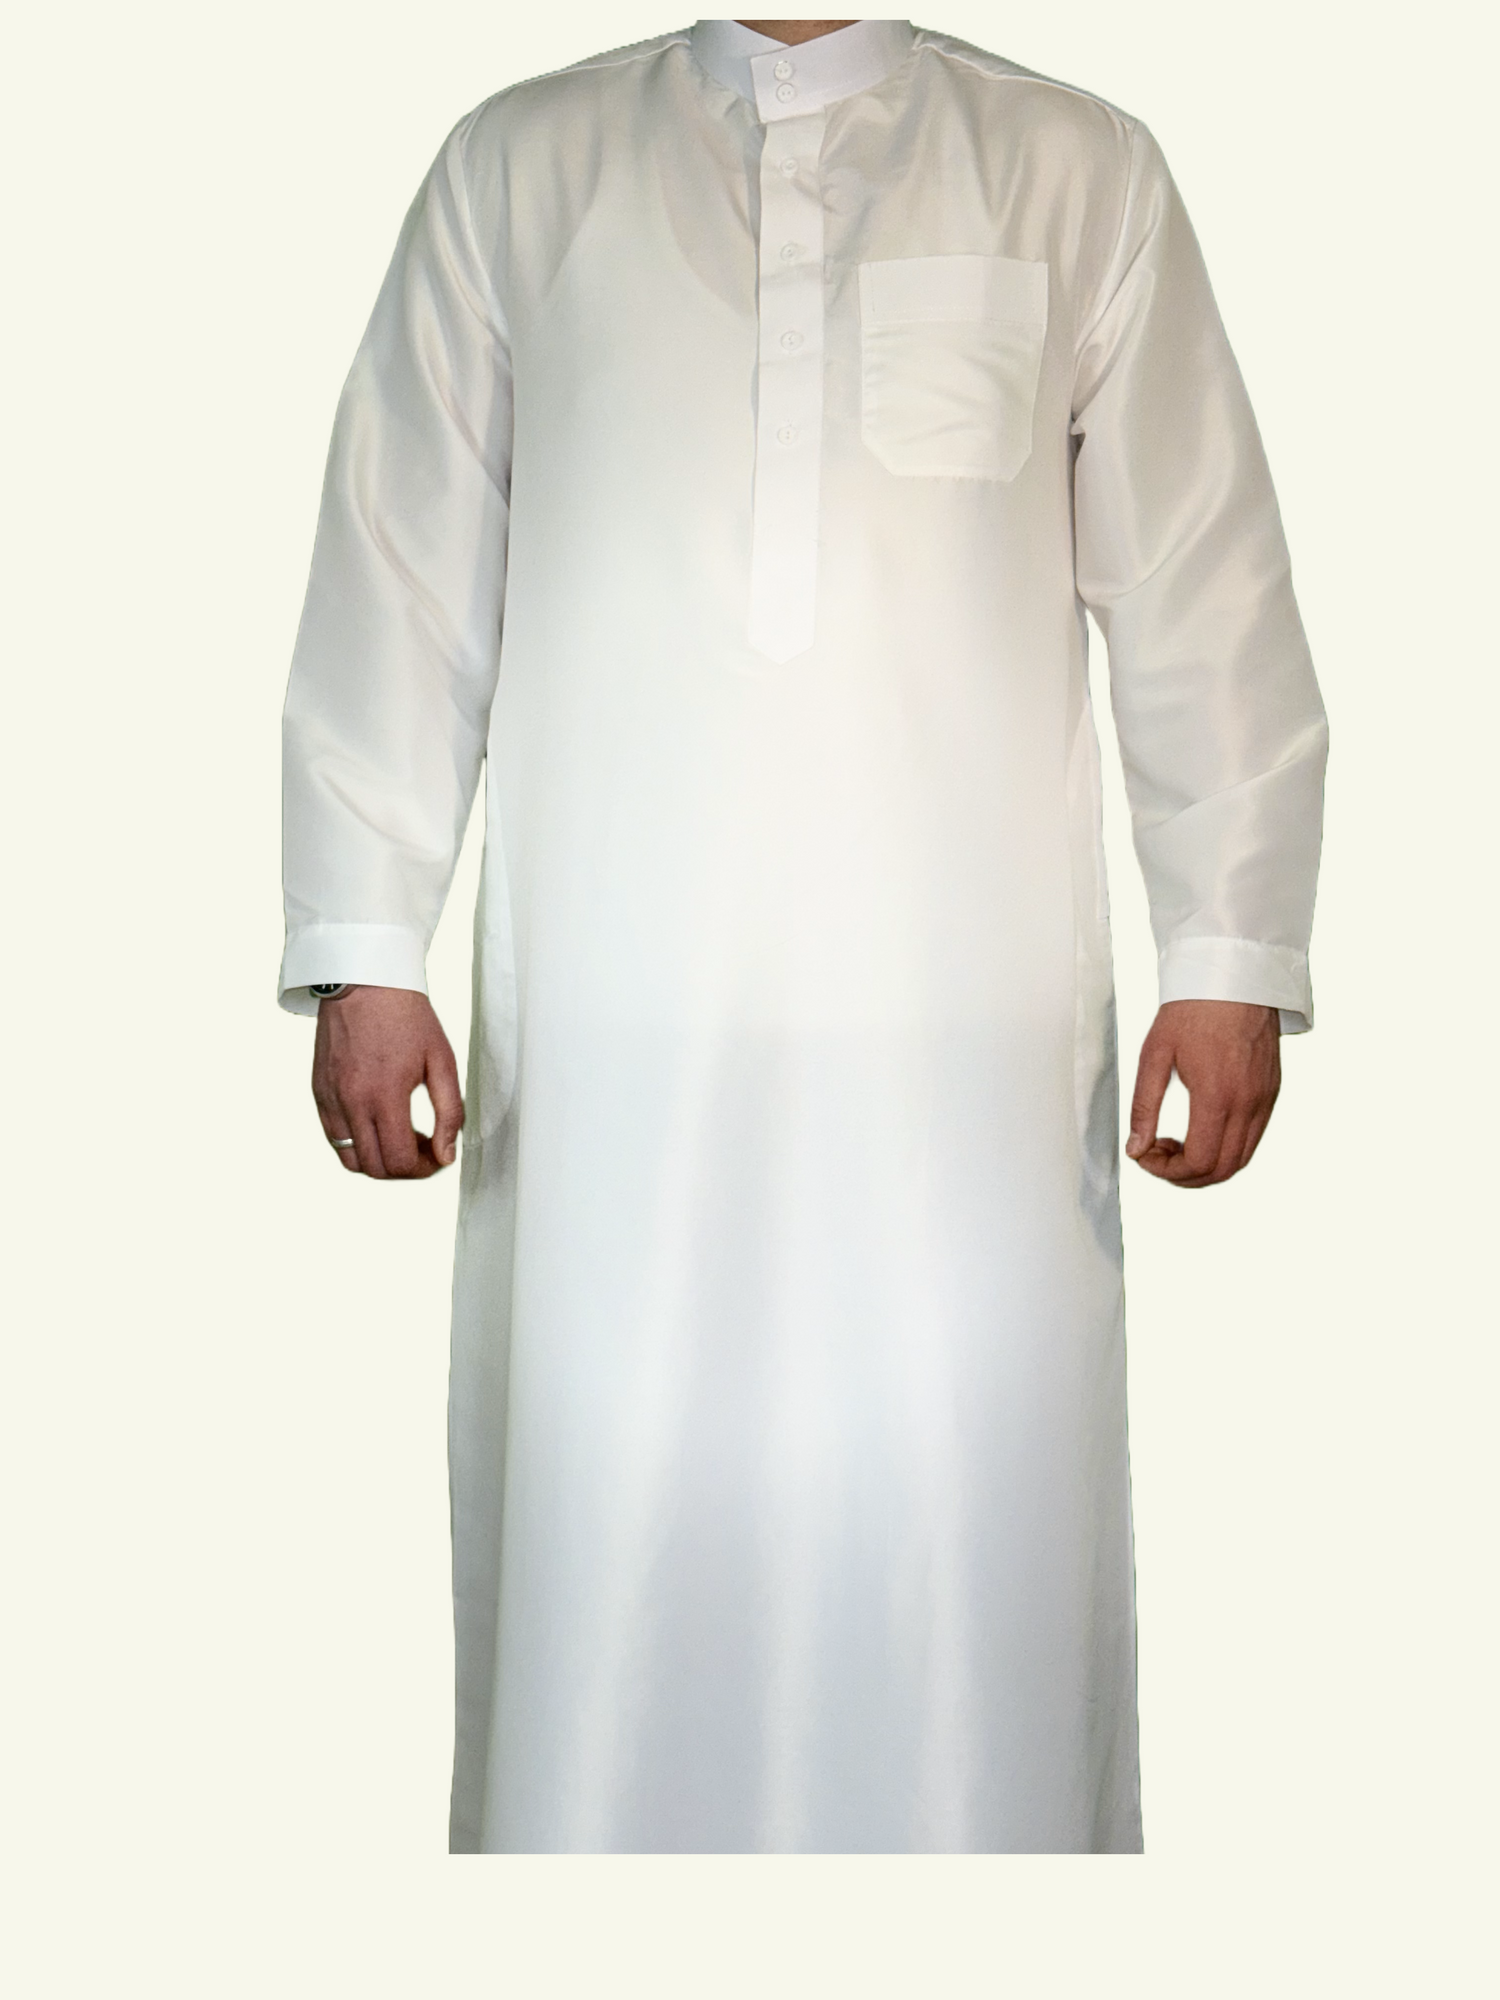 Ein weißes Djellaba Saudi Style Qamis aus leichtem Polyesterstoff. Das Kleidungsstück verkörpert Reinheit und Bescheidenheit mit einem lockeren Schnitt und saudischen Designeinflüssen.